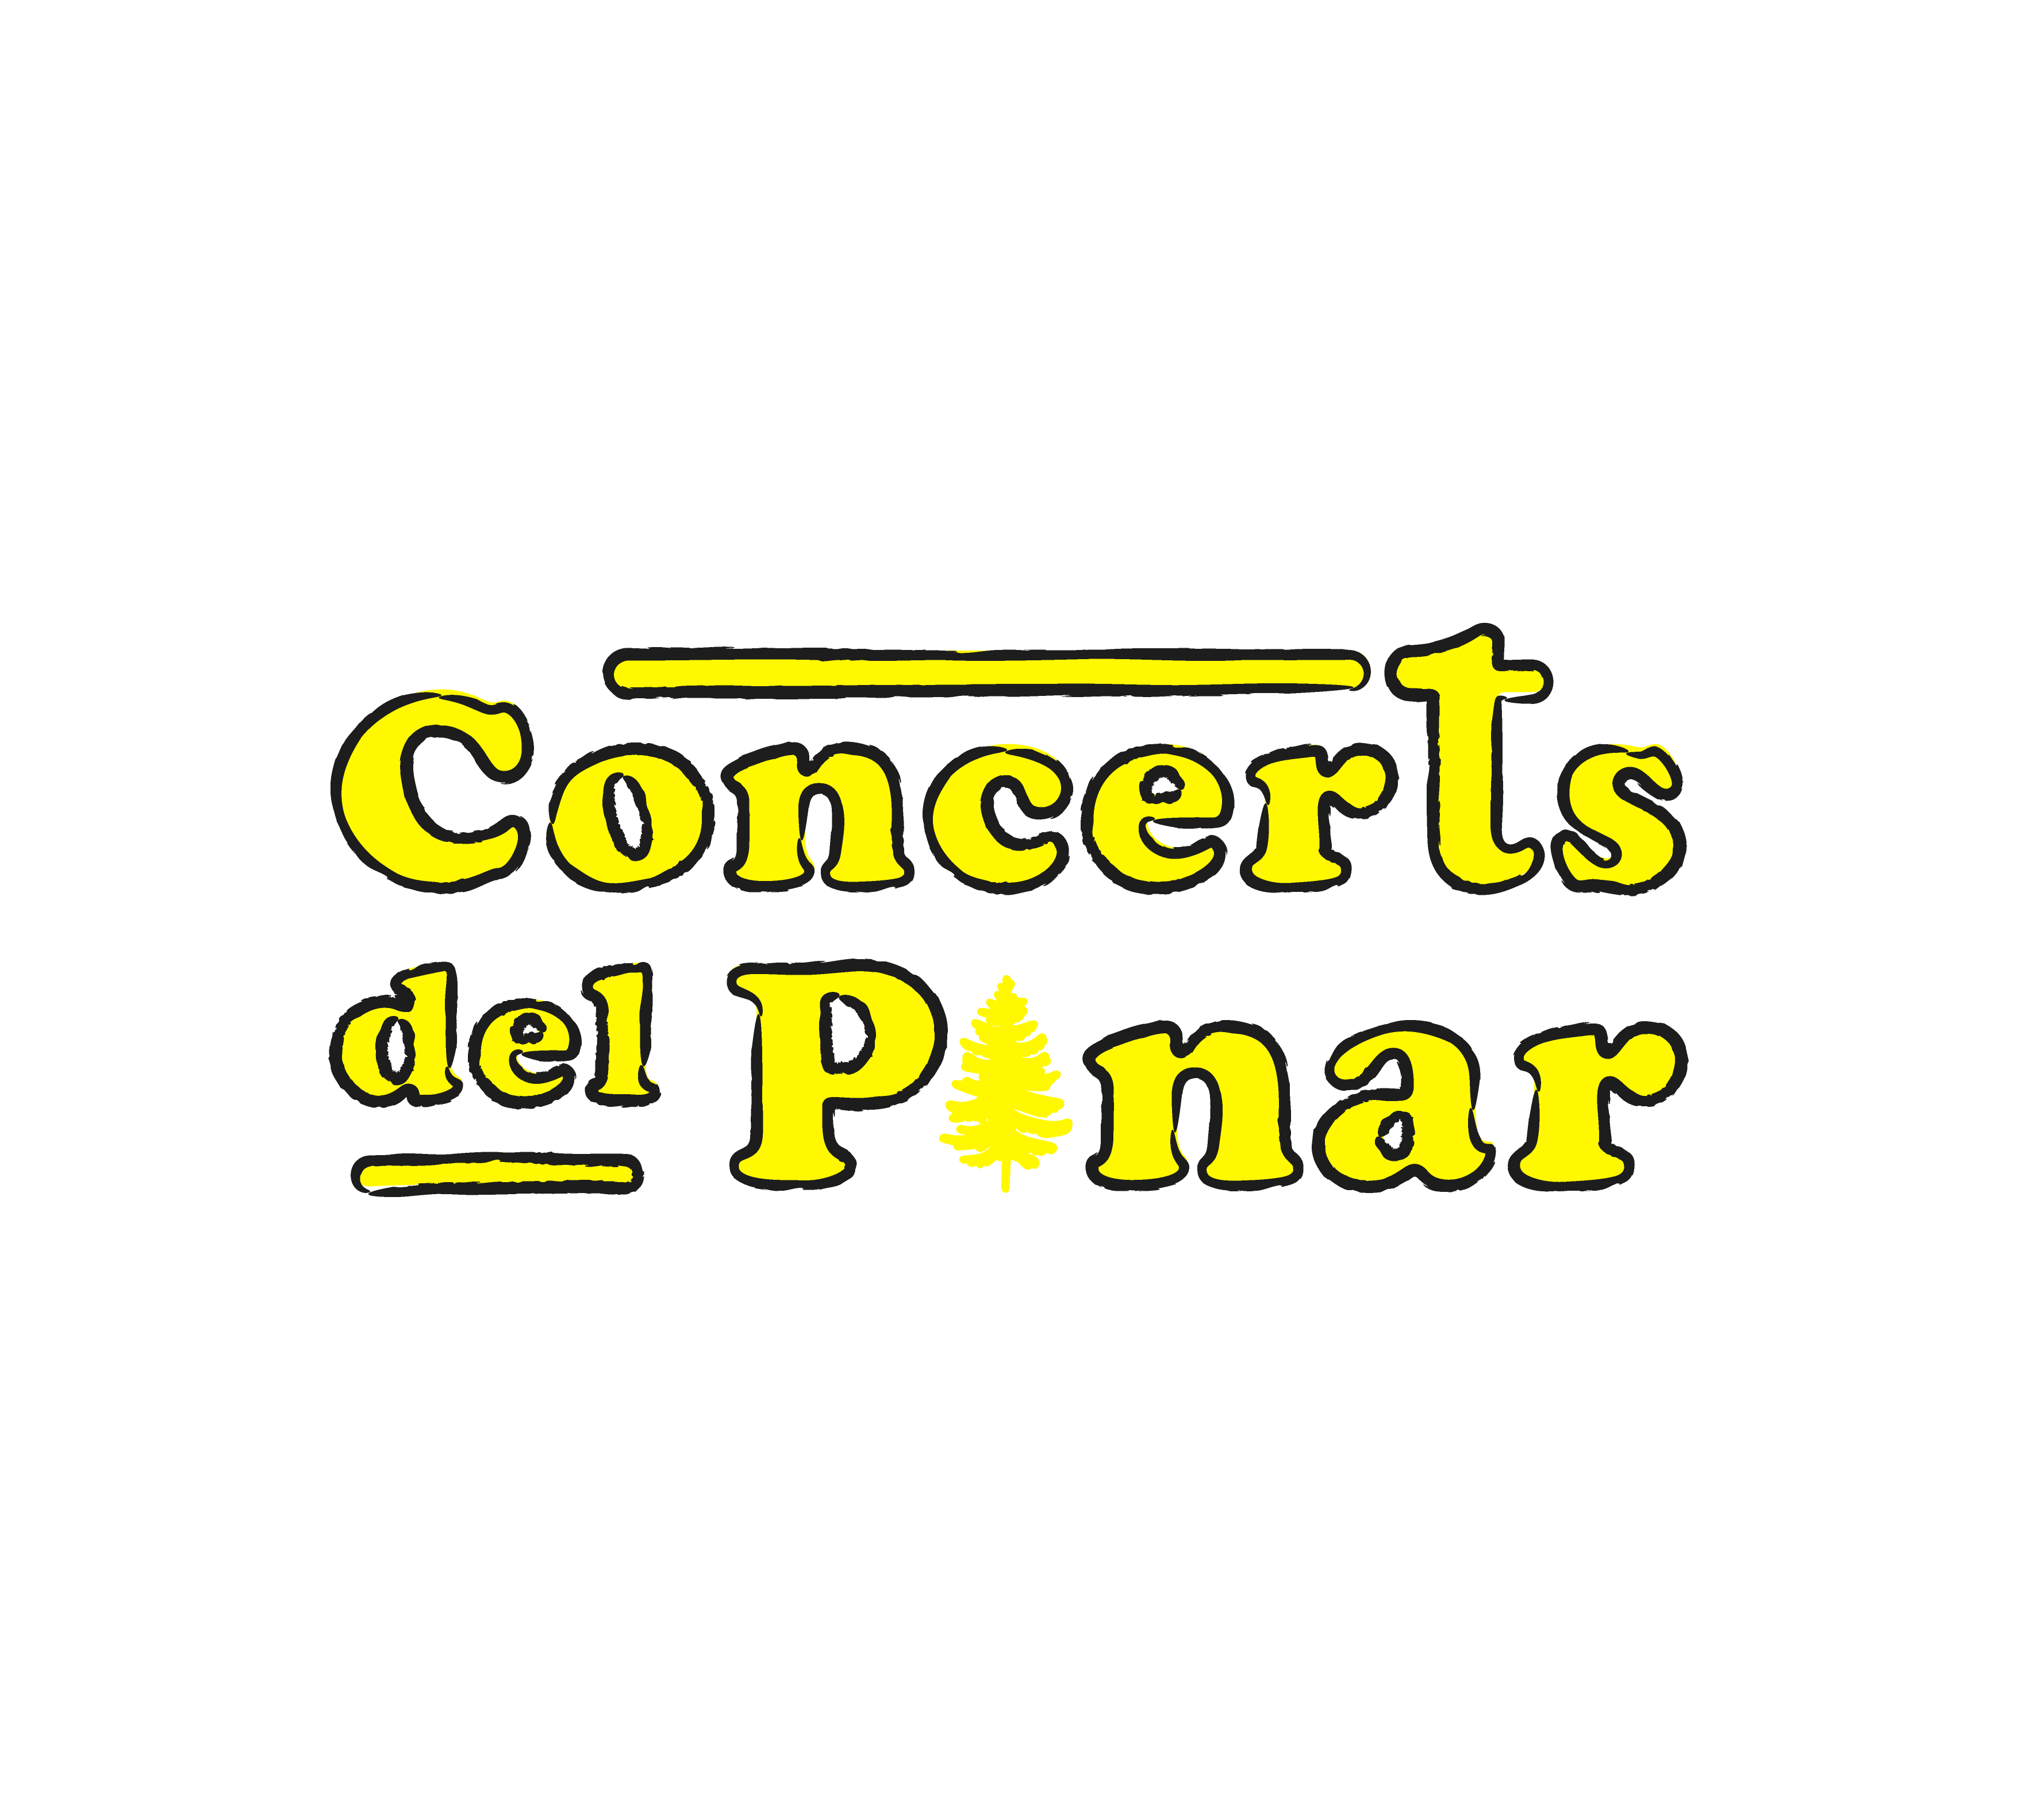 Concerts del Pinar